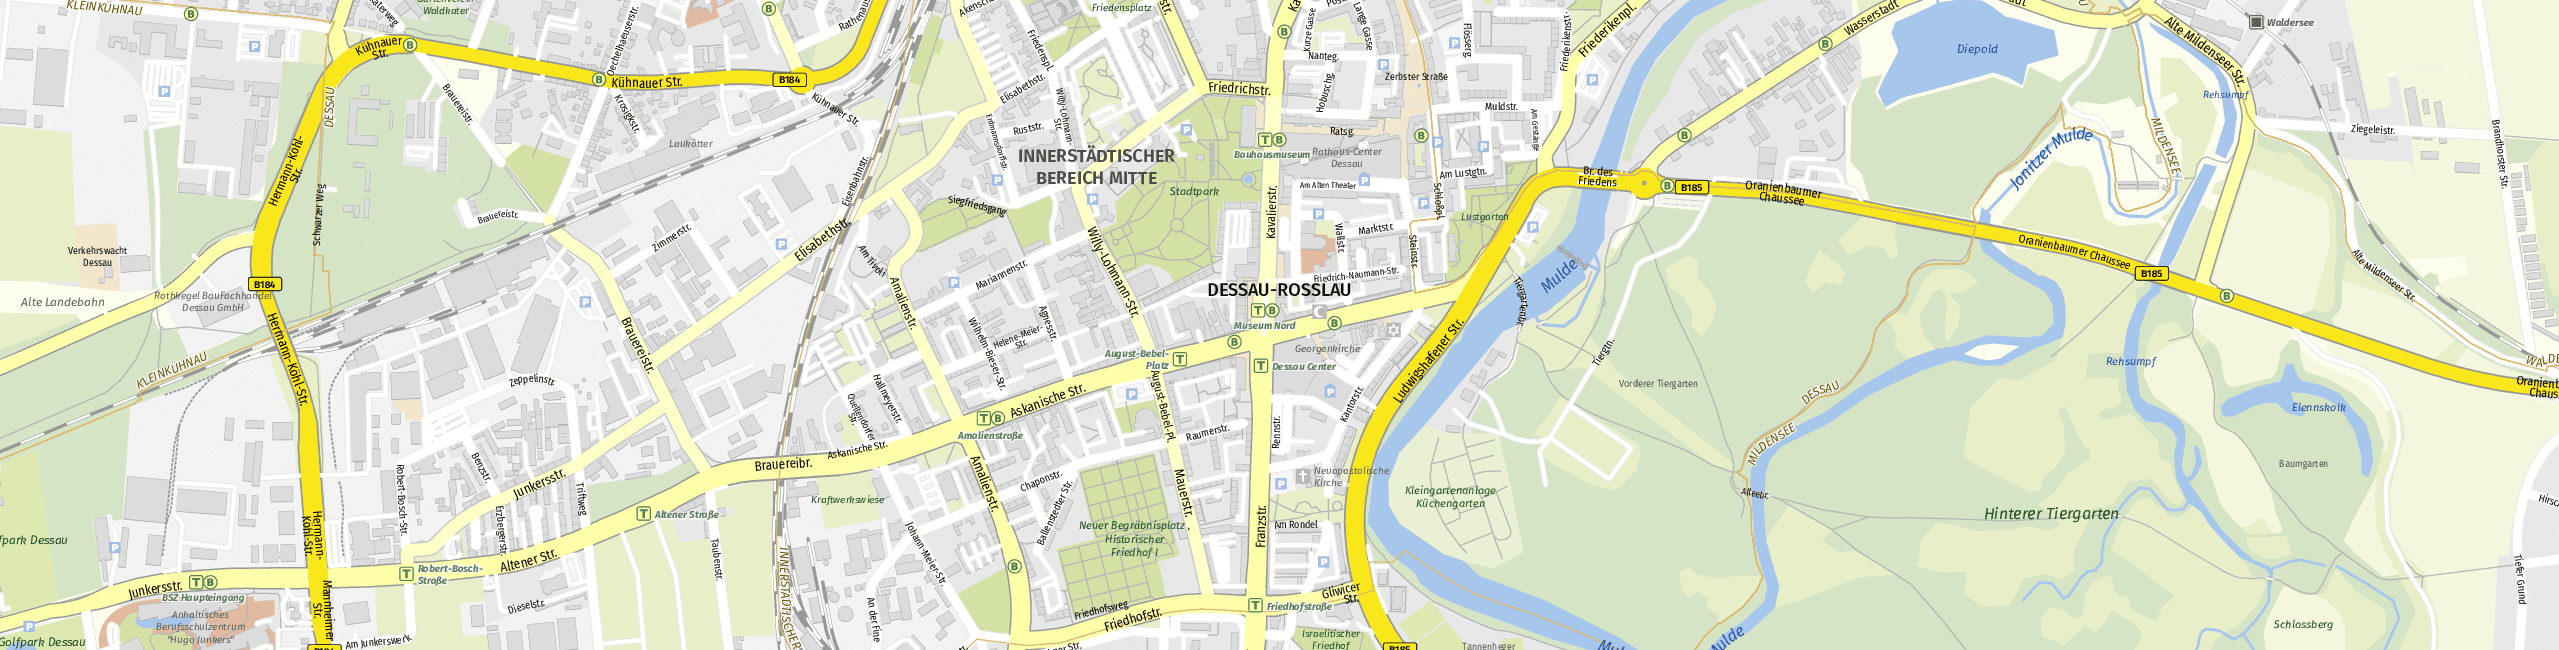 Download Stadtplan Dessau-Roßlau